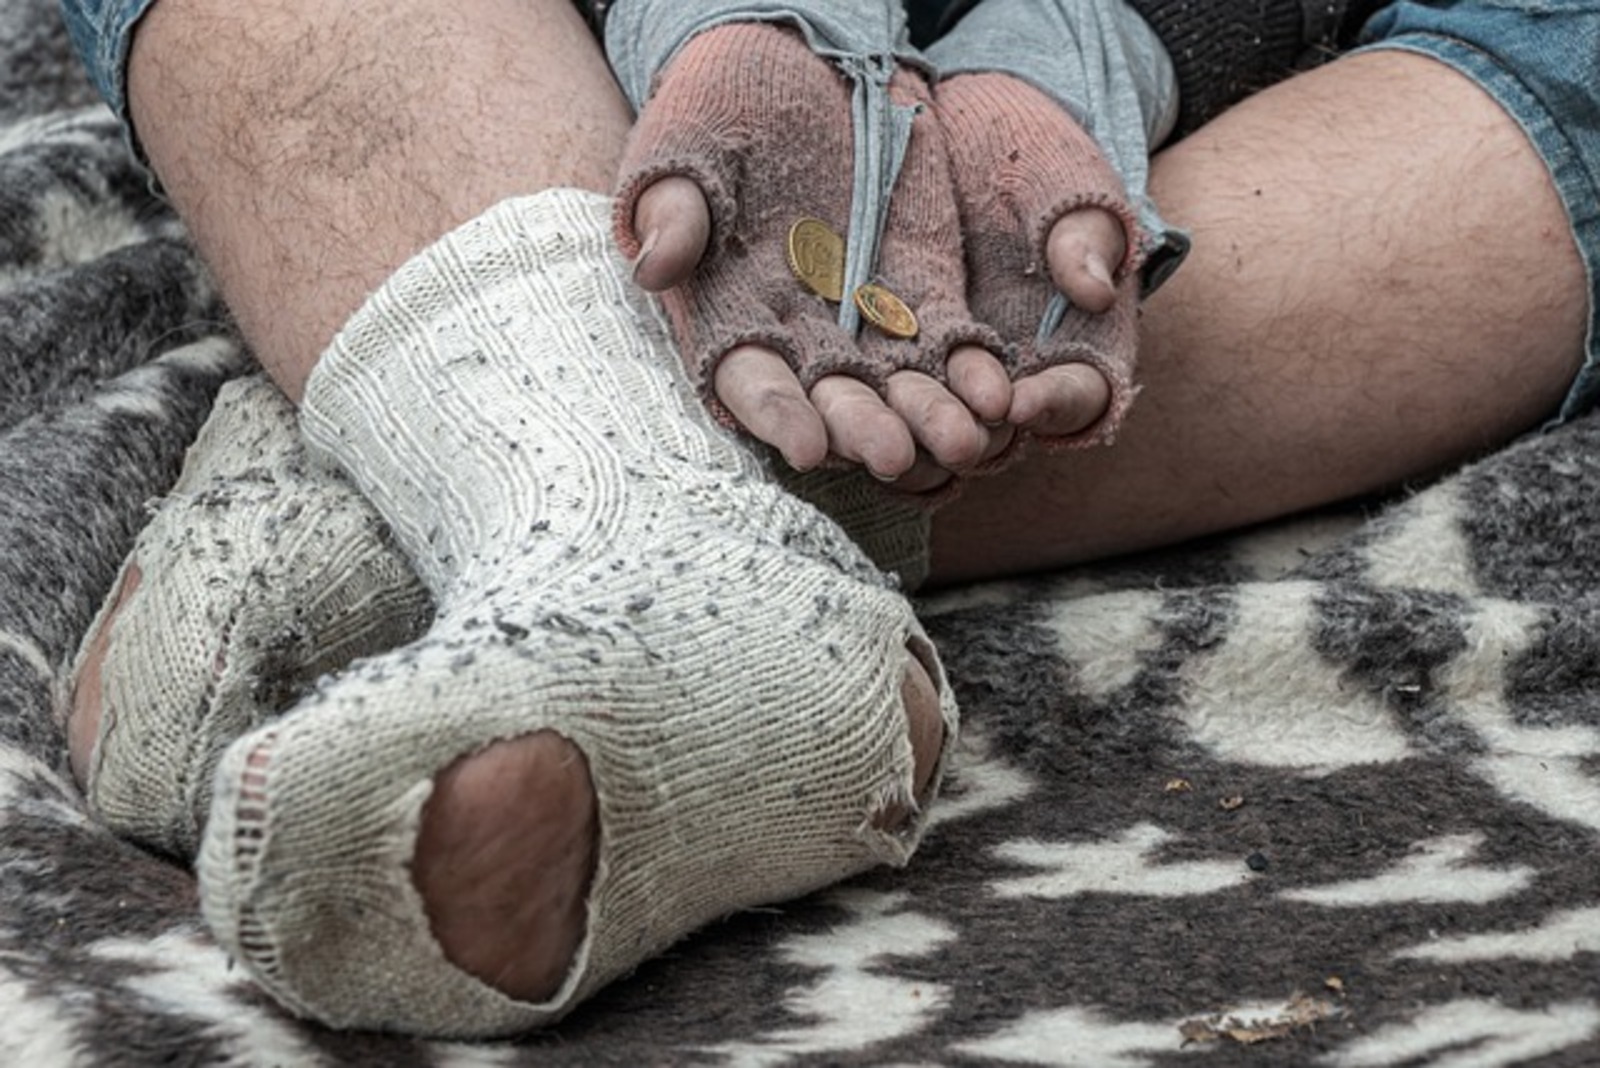 Еще два пункта обогрева для бездомных появились в столице Башкирии